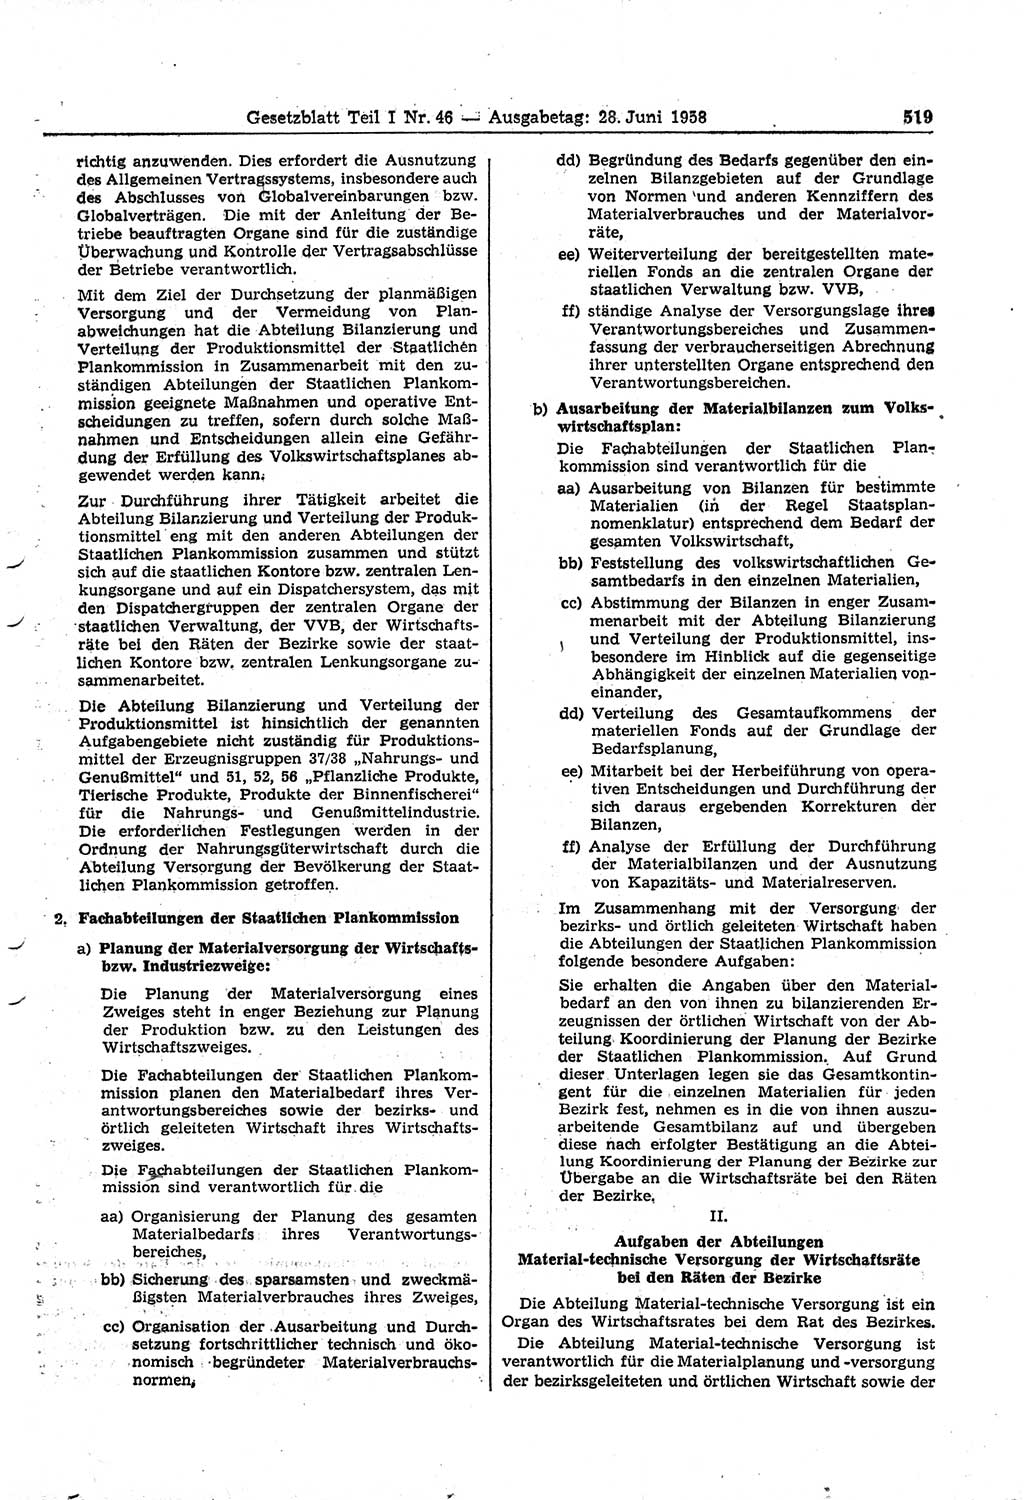 Gesetzblatt (GBl.) der Deutschen Demokratischen Republik (DDR) Teil Ⅰ 1958, Seite 519 (GBl. DDR Ⅰ 1958, S. 519)